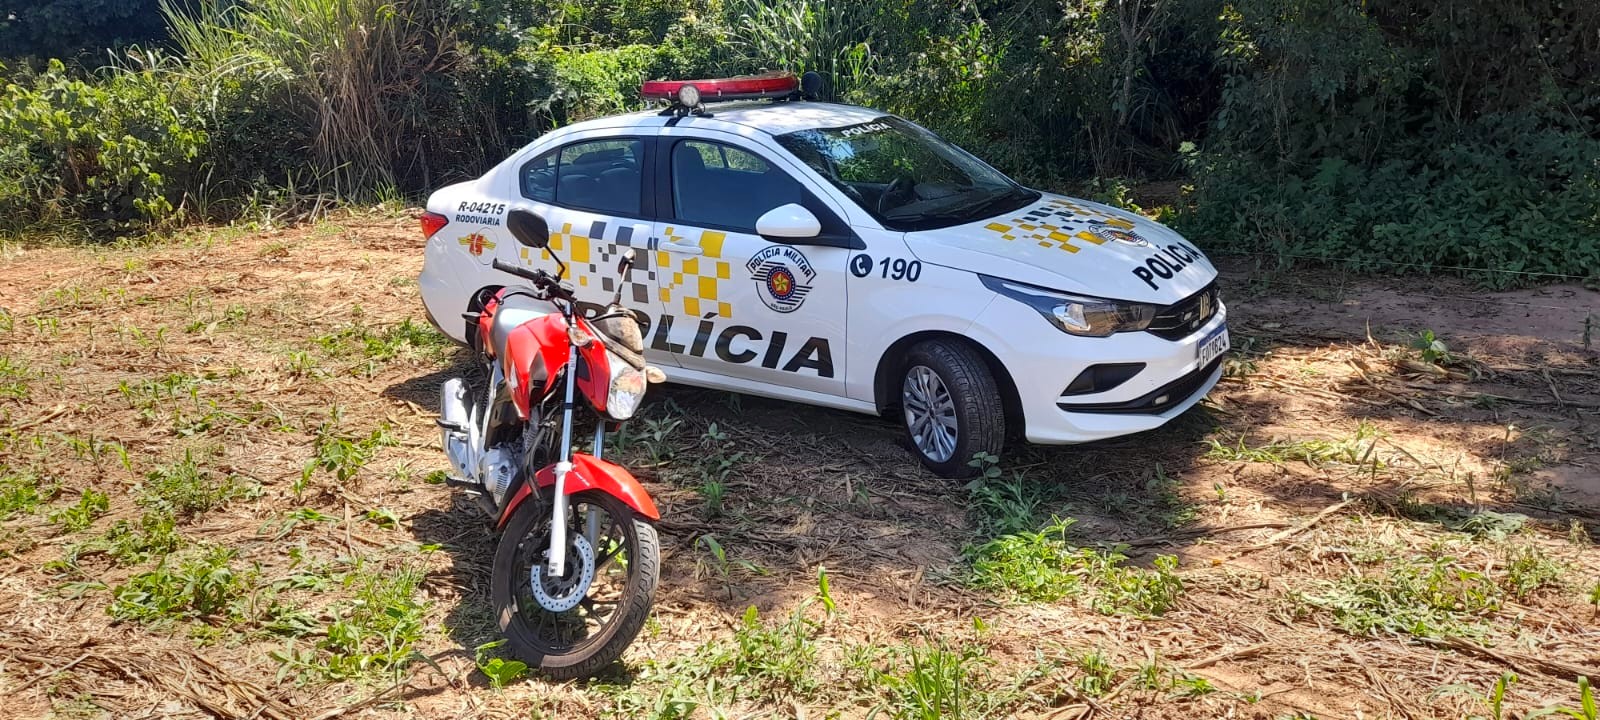 Criminoso abandona moto furtada após perseguição em rodovia de Cosmópolis